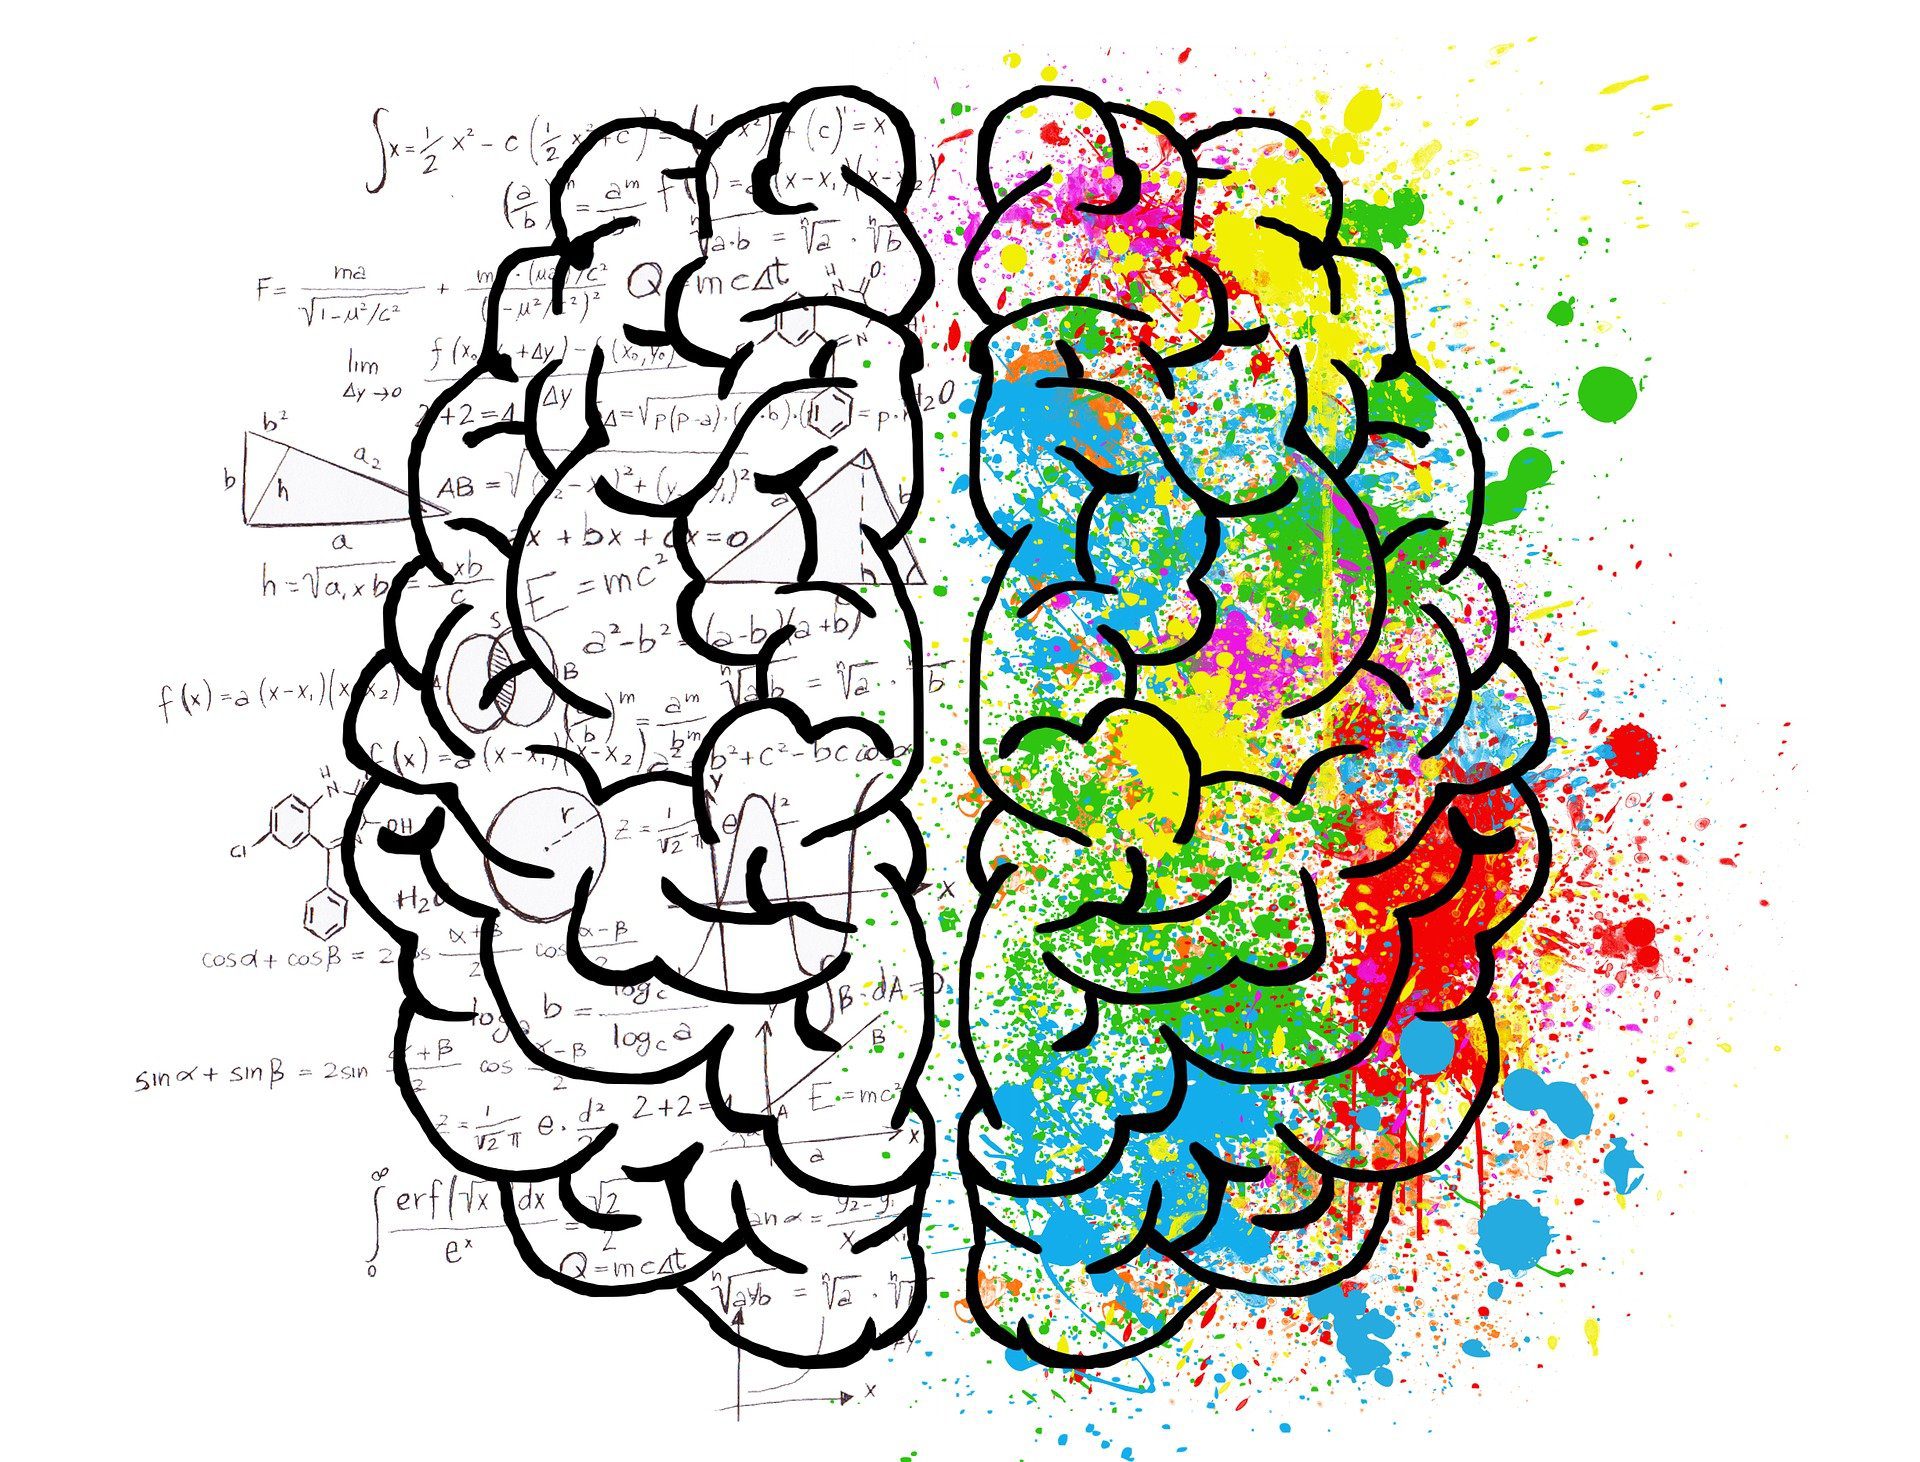 Invloed kleuren op hersenen en emotie